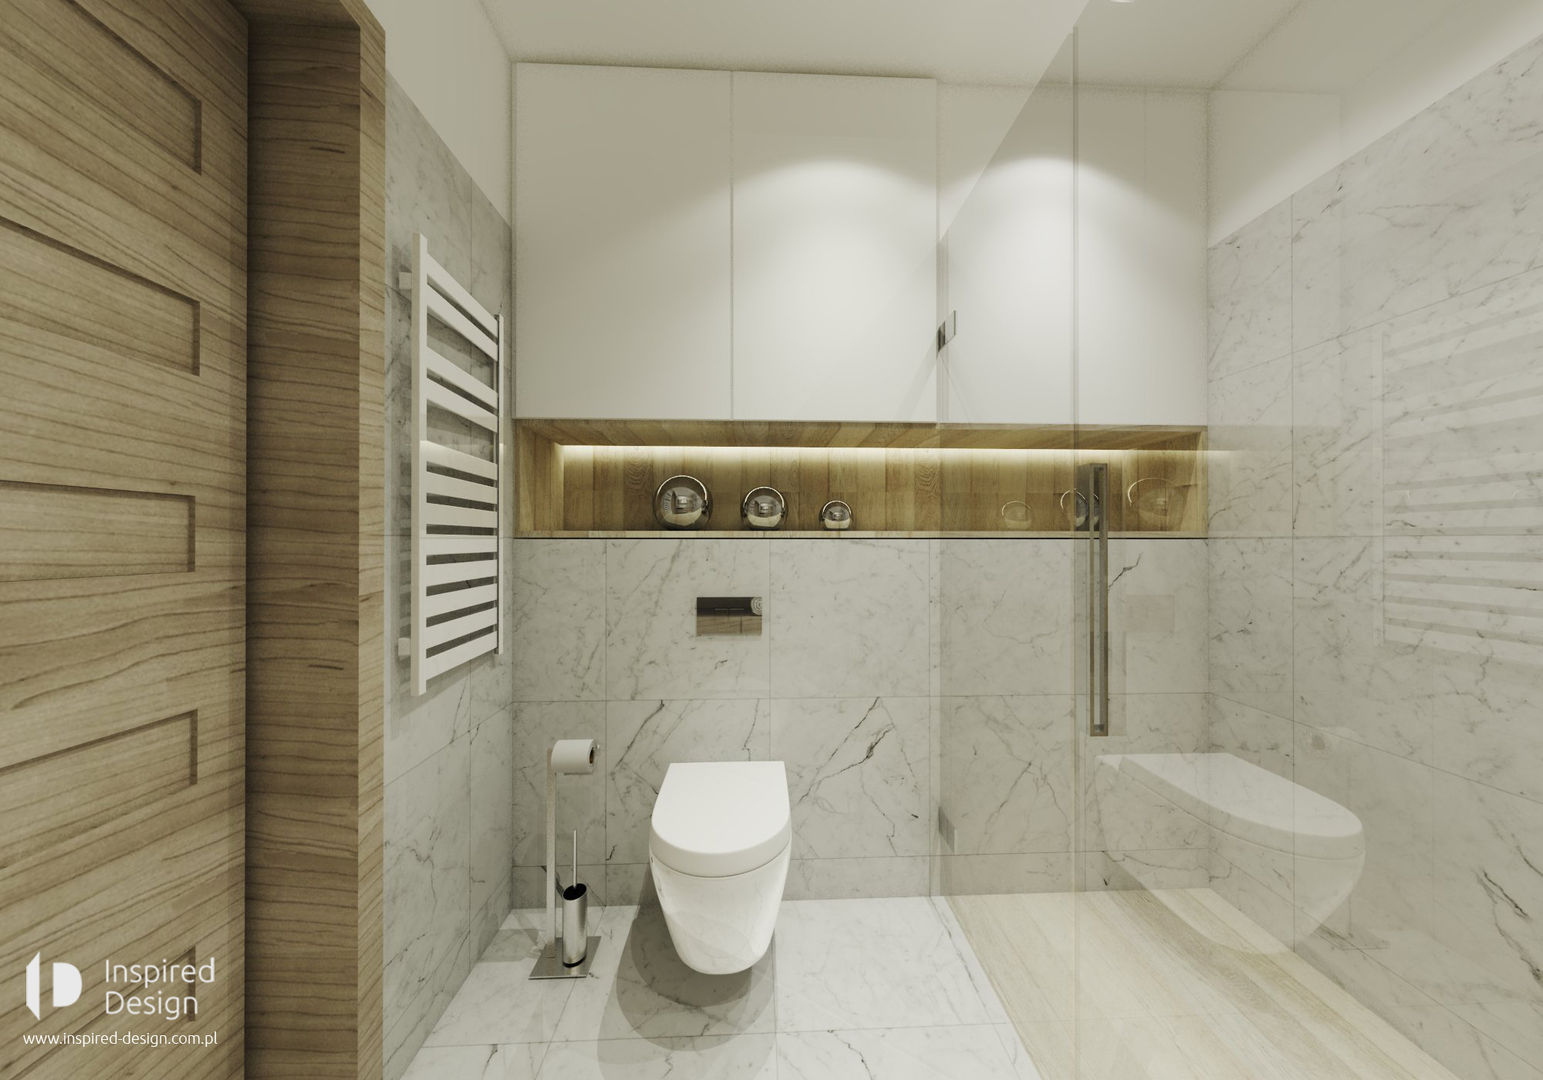 Łazienka w Opolu, Inspired Design Inspired Design Casas de banho modernas